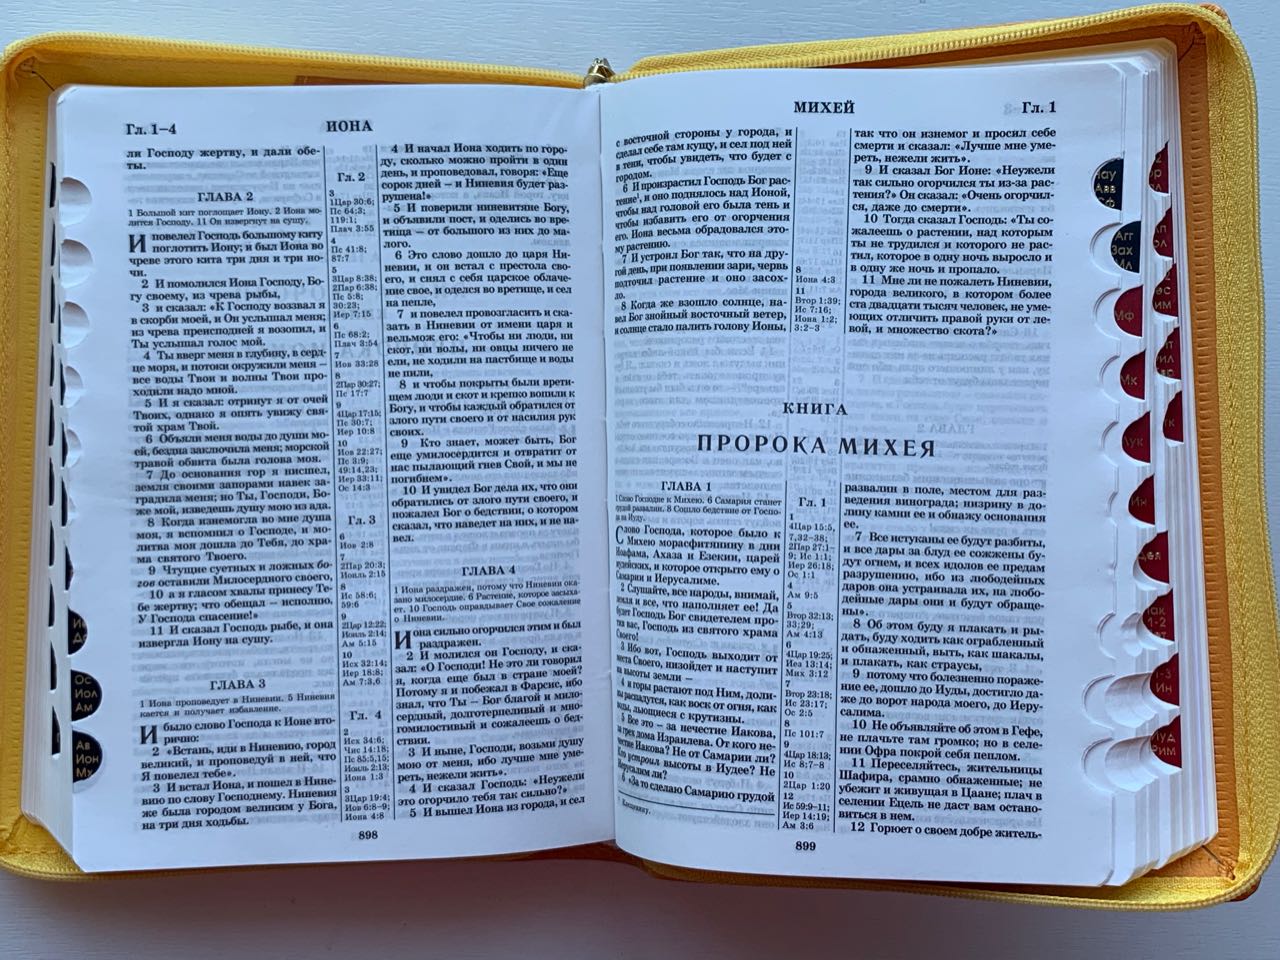 БИБЛИЯ 077DTzti формат, переплет из искусственной кожи на молнии с индексами, надпись золотом "Библия", цвет желтый/салатовый, большой формат, 180*260 мм, цветные карты, крупный шрифт